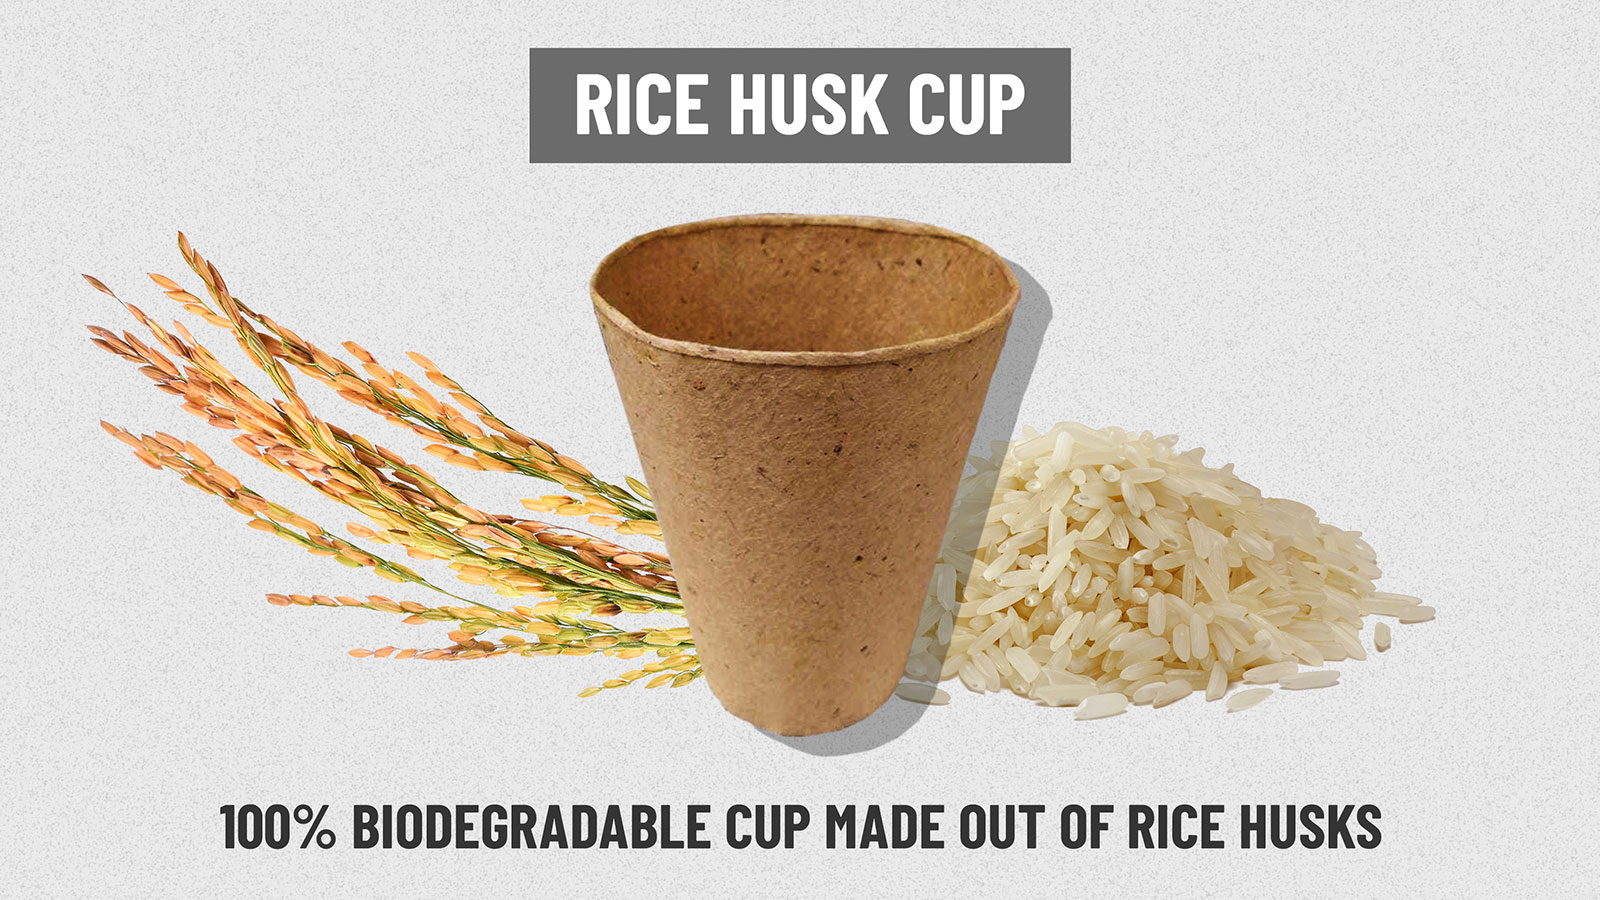 https://cdn.cnn.com/cnn/interactive/2019/02/business/starbucks-cup-problem/media/cups-centerpiece-gallery-rice.jpg